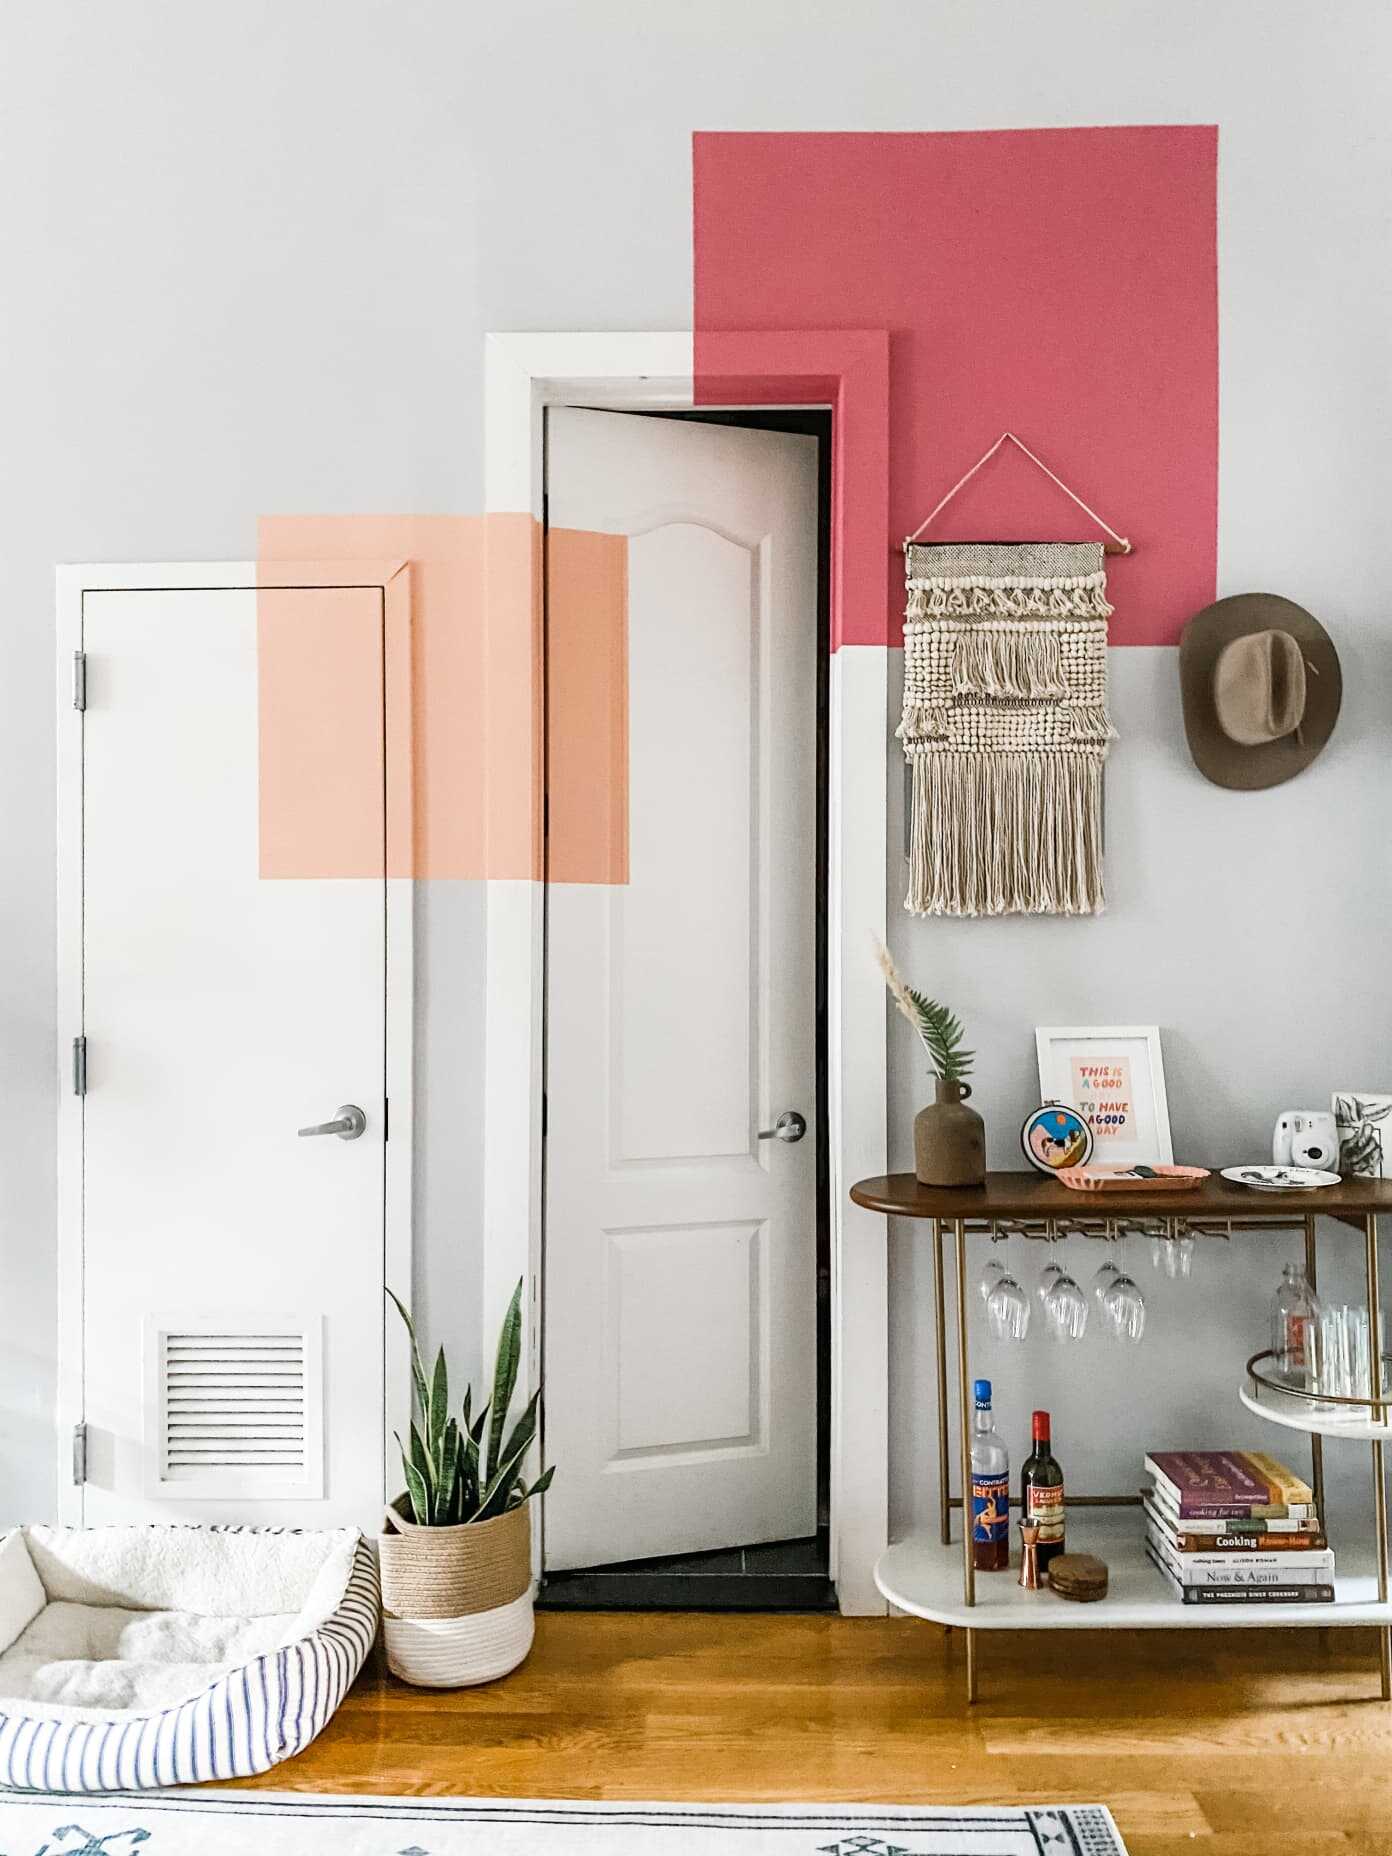 6 cách giúp phối hợp màu sắc trong thiết kế nhà ở (1)